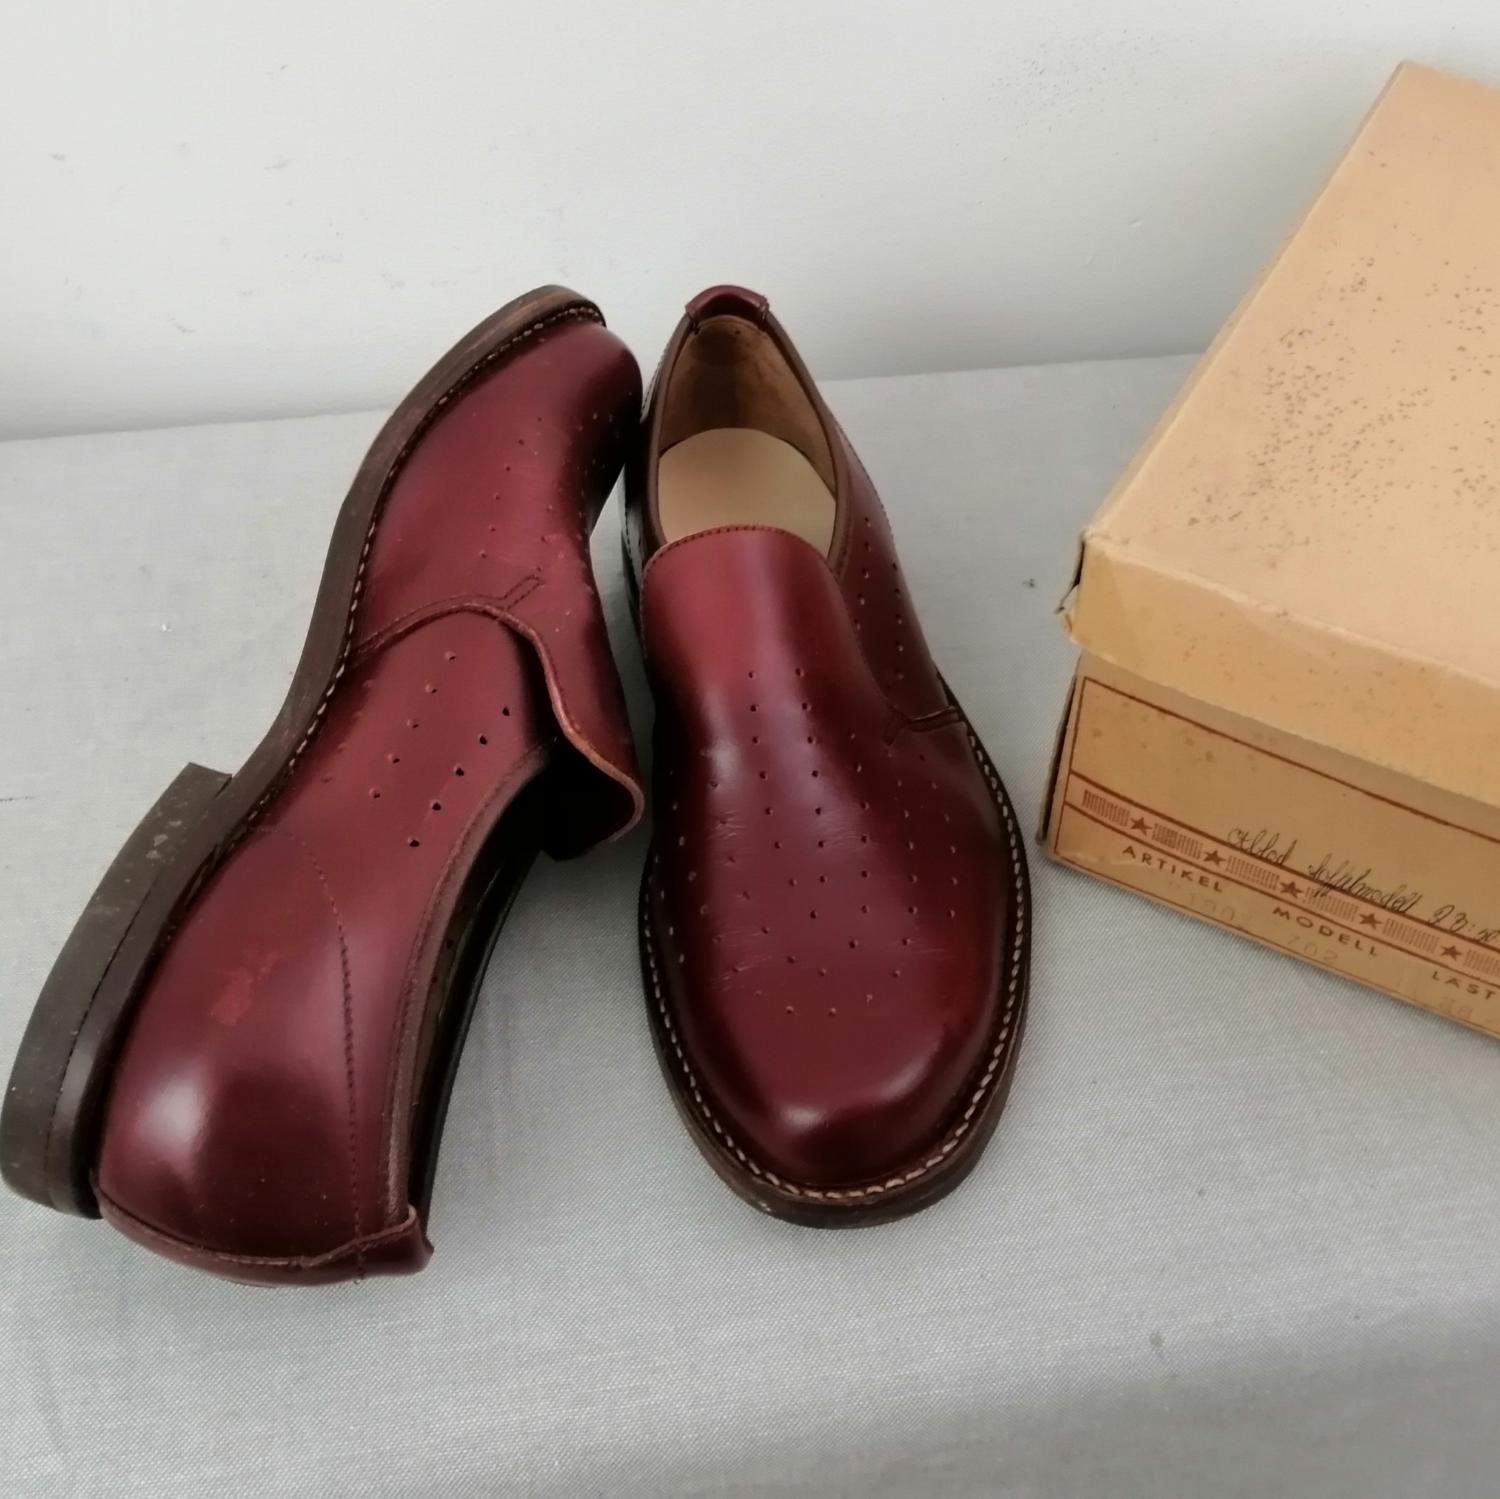 Vintage Docksta sko toffelmodell vinröd plös dekorhål stl 4A ca 37 pojk